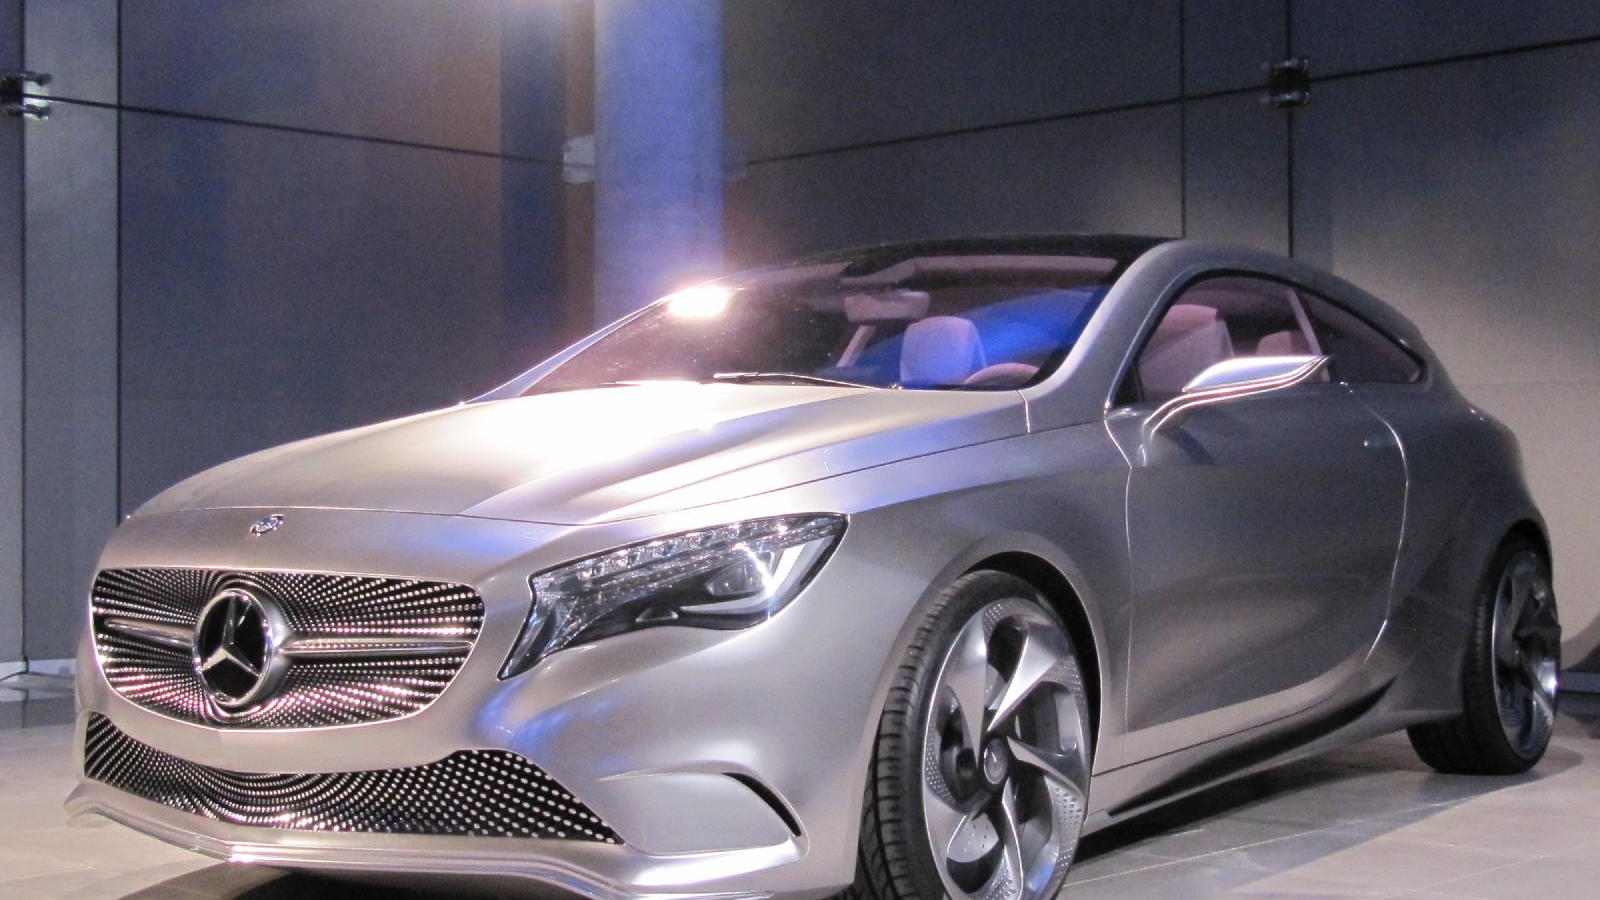 Mercedes-Benz Concept A-Class, at new Mercedes-Benz Manhattan showroom, April 2011